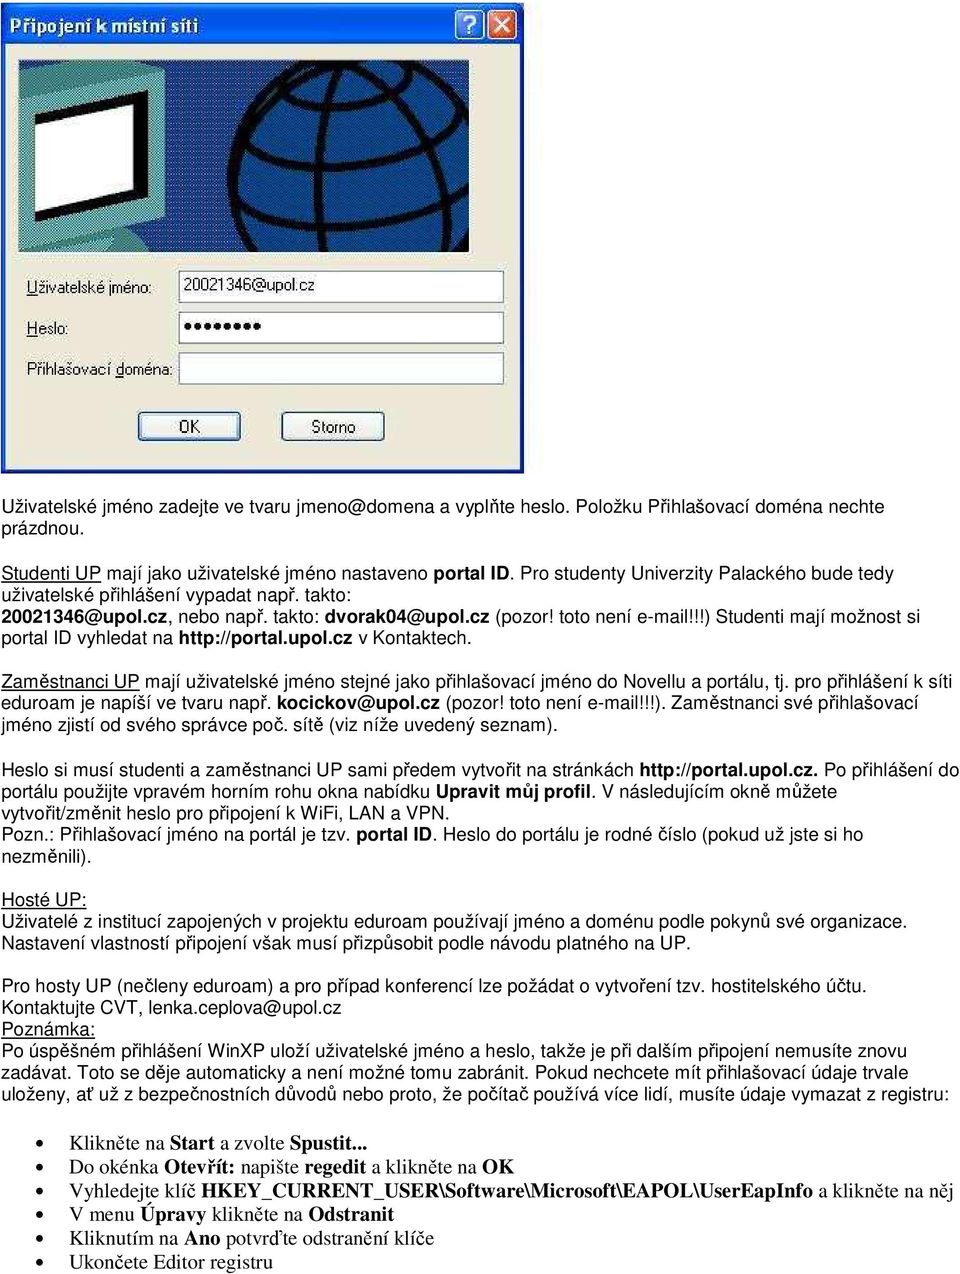 !!) Studenti mají možnost si portal ID vyhledat na http://portal.upol.cz v Kontaktech. Zaměstnanci UP mají uživatelské jméno stejné jako přihlašovací jméno do Novellu a portálu, tj.